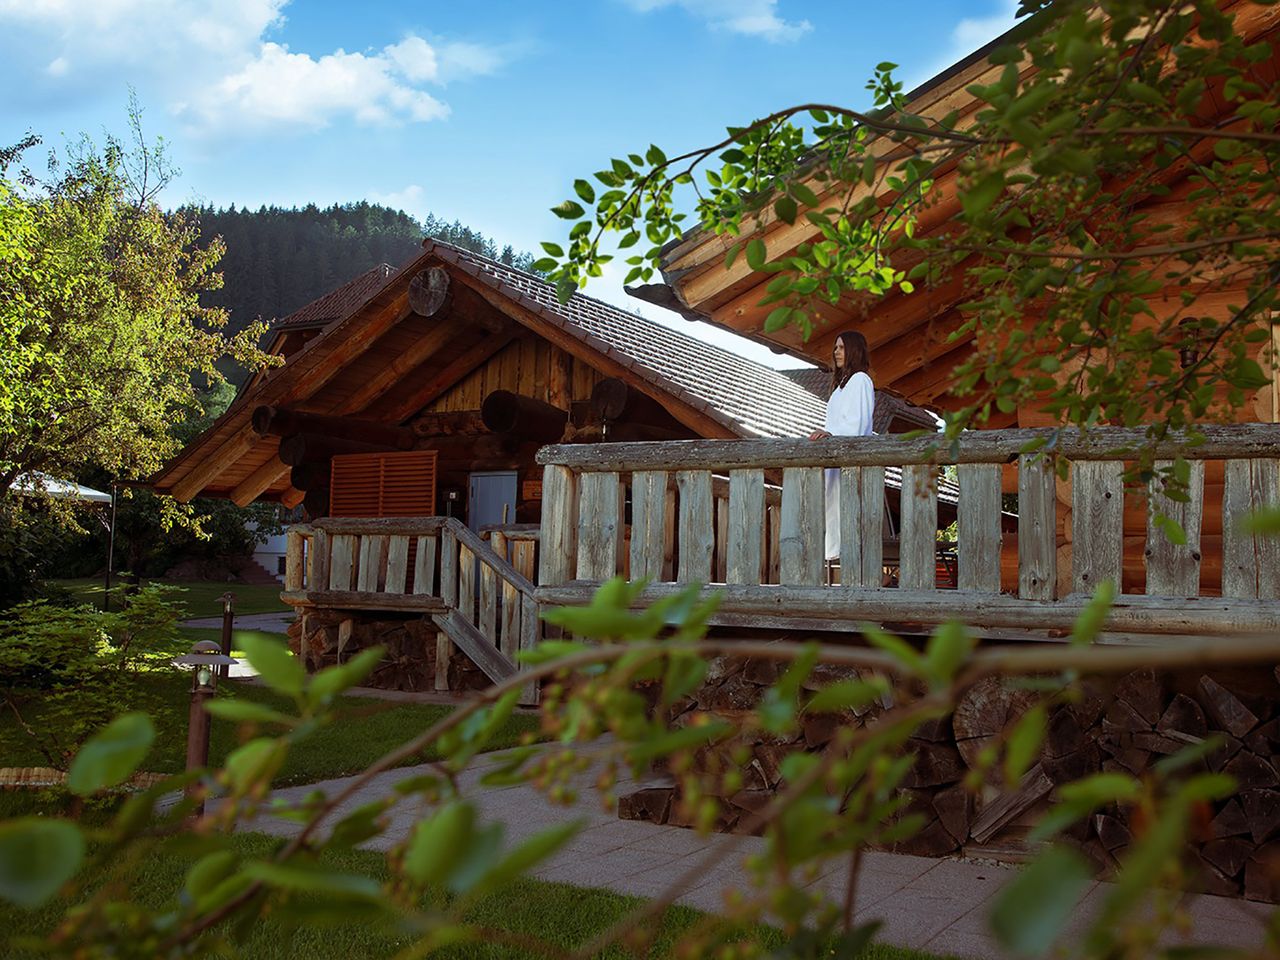 7 entspannte Tage im Schwarzwald mit Frühstück